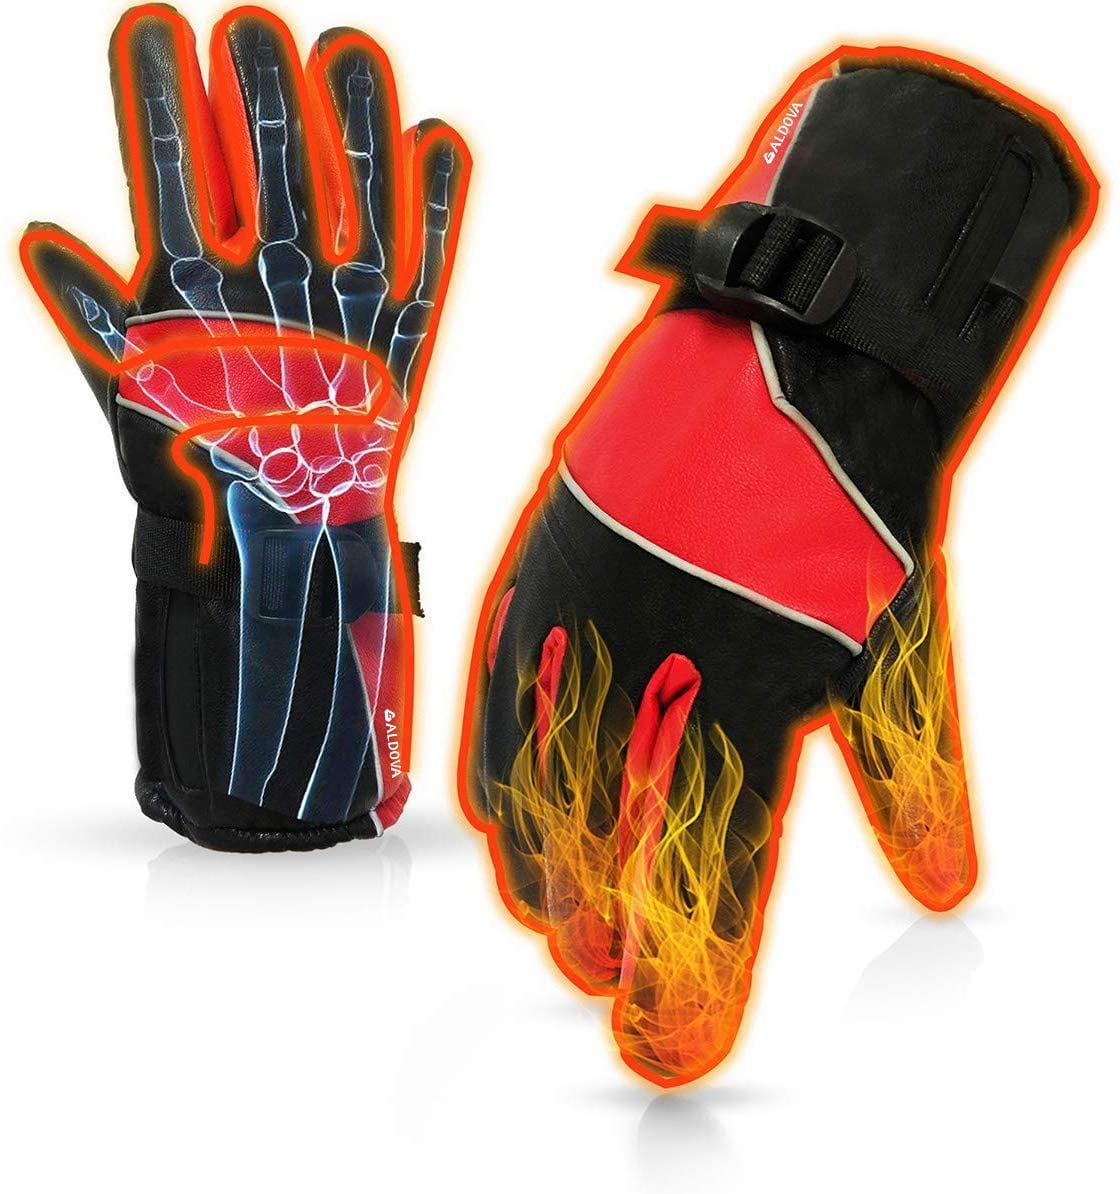 waterproof gloves for bike